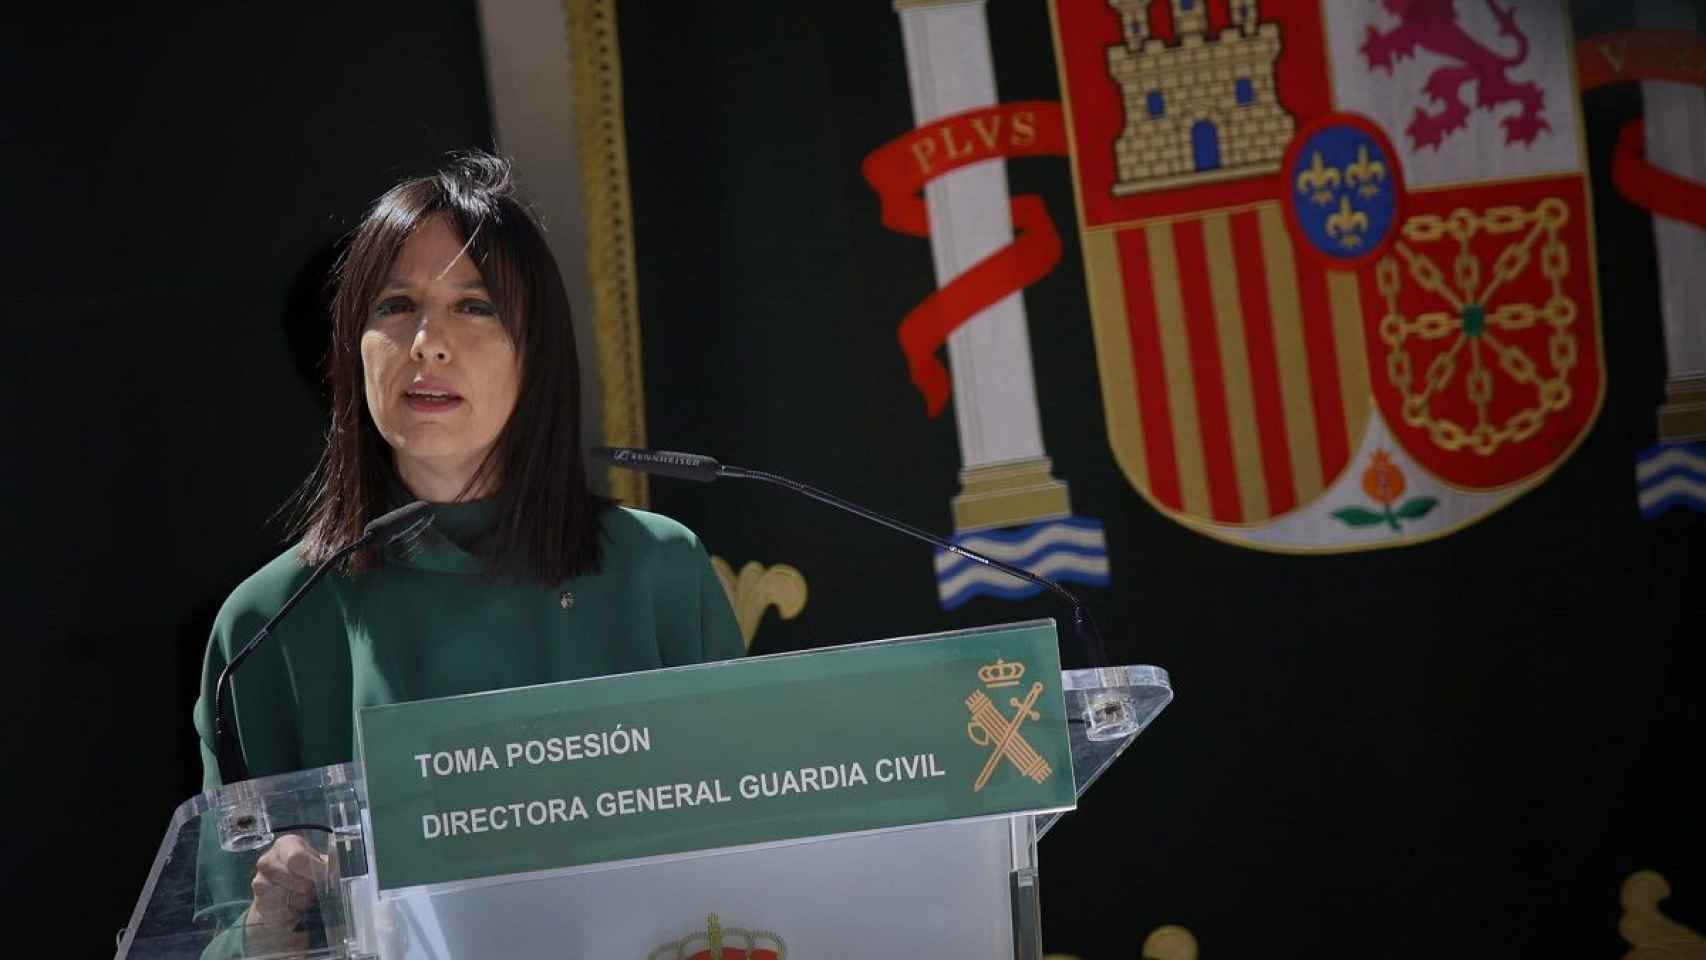 El acto de posesión de Mercedes González como directora de la Guardia Civil